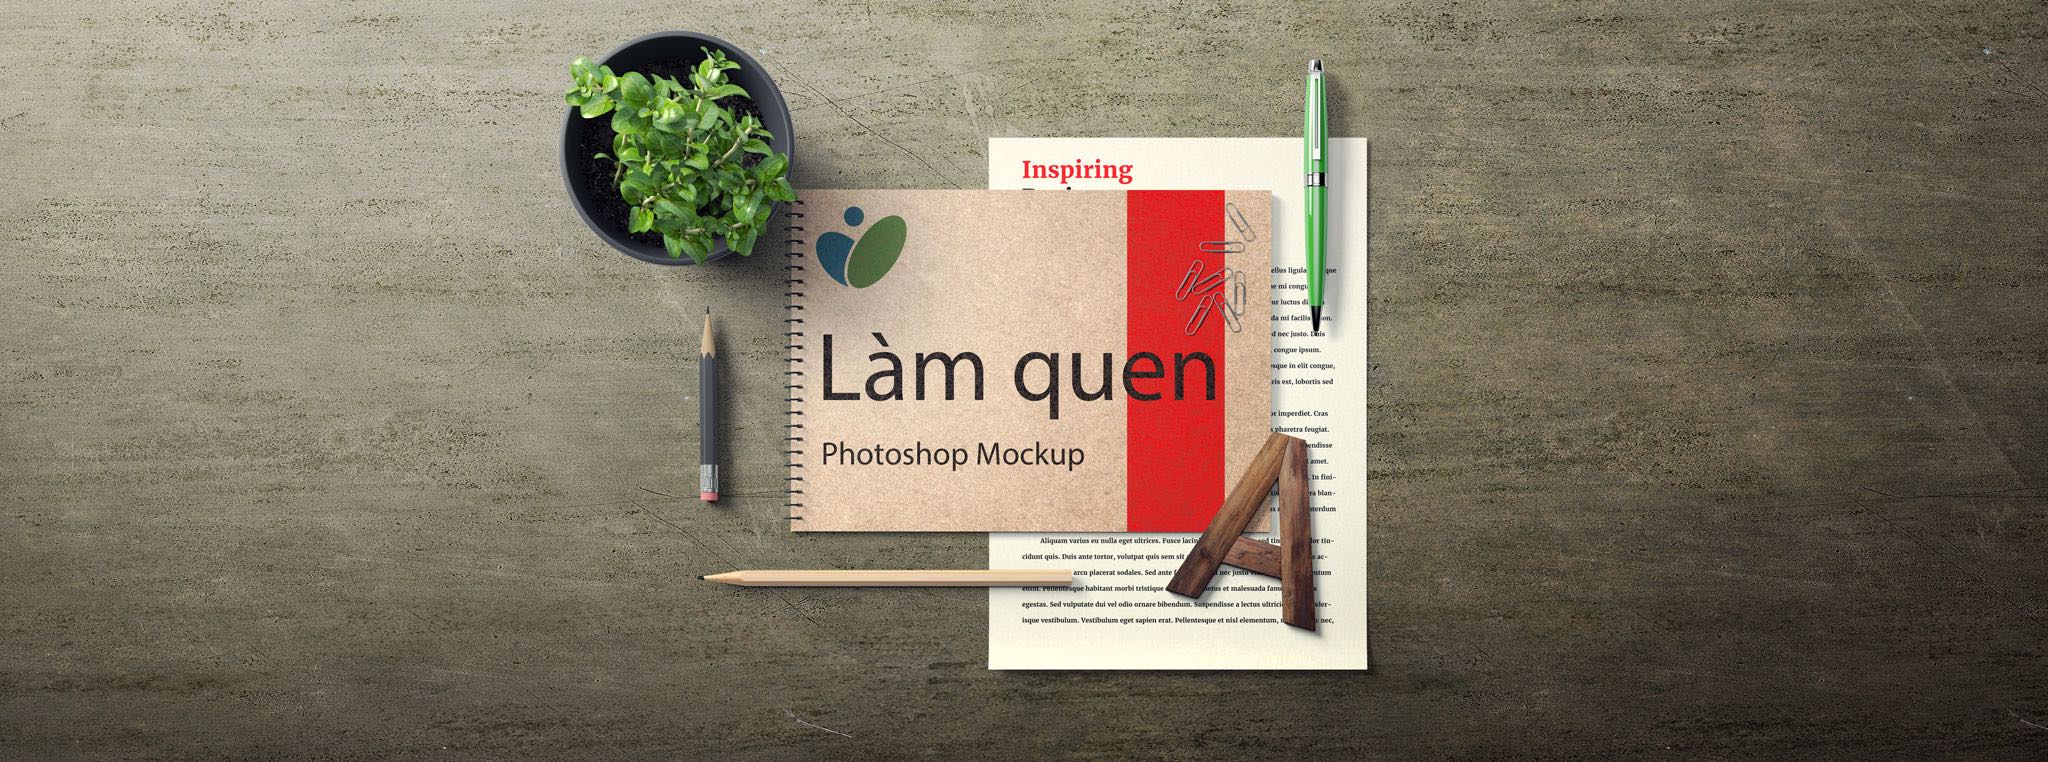 Hướng dẫn Thiết kế đẹp, nhanh và dễ bằng Photoshop Mockup